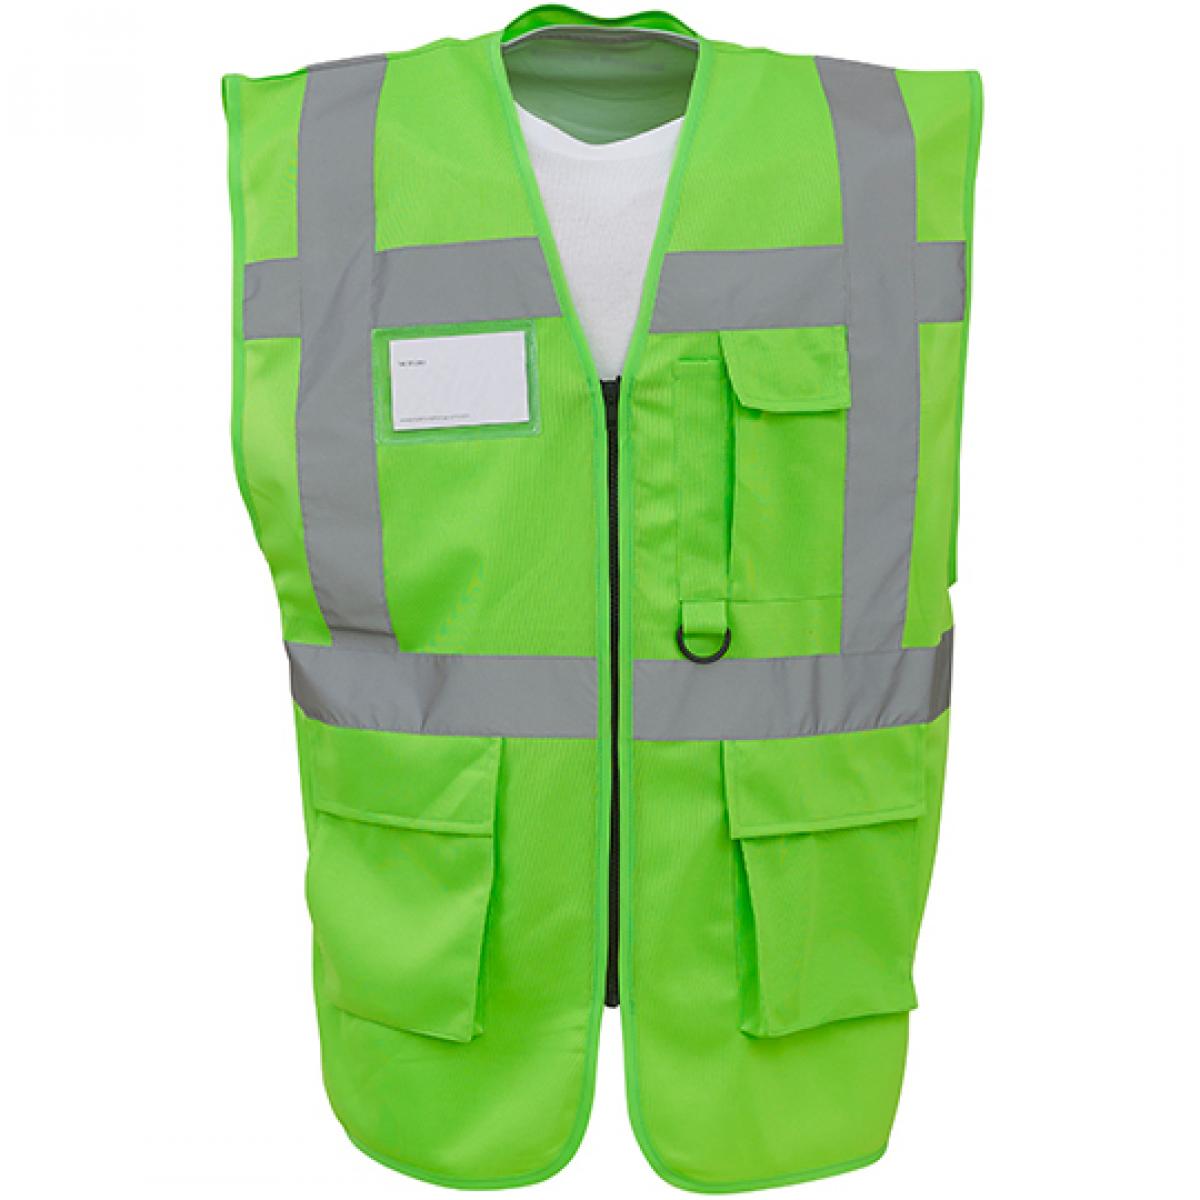 Hersteller: YOKO Herstellernummer: HVW801 Artikelbezeichnung: Herren Multi-Functional Executive Waistcoat Farbe: Lime